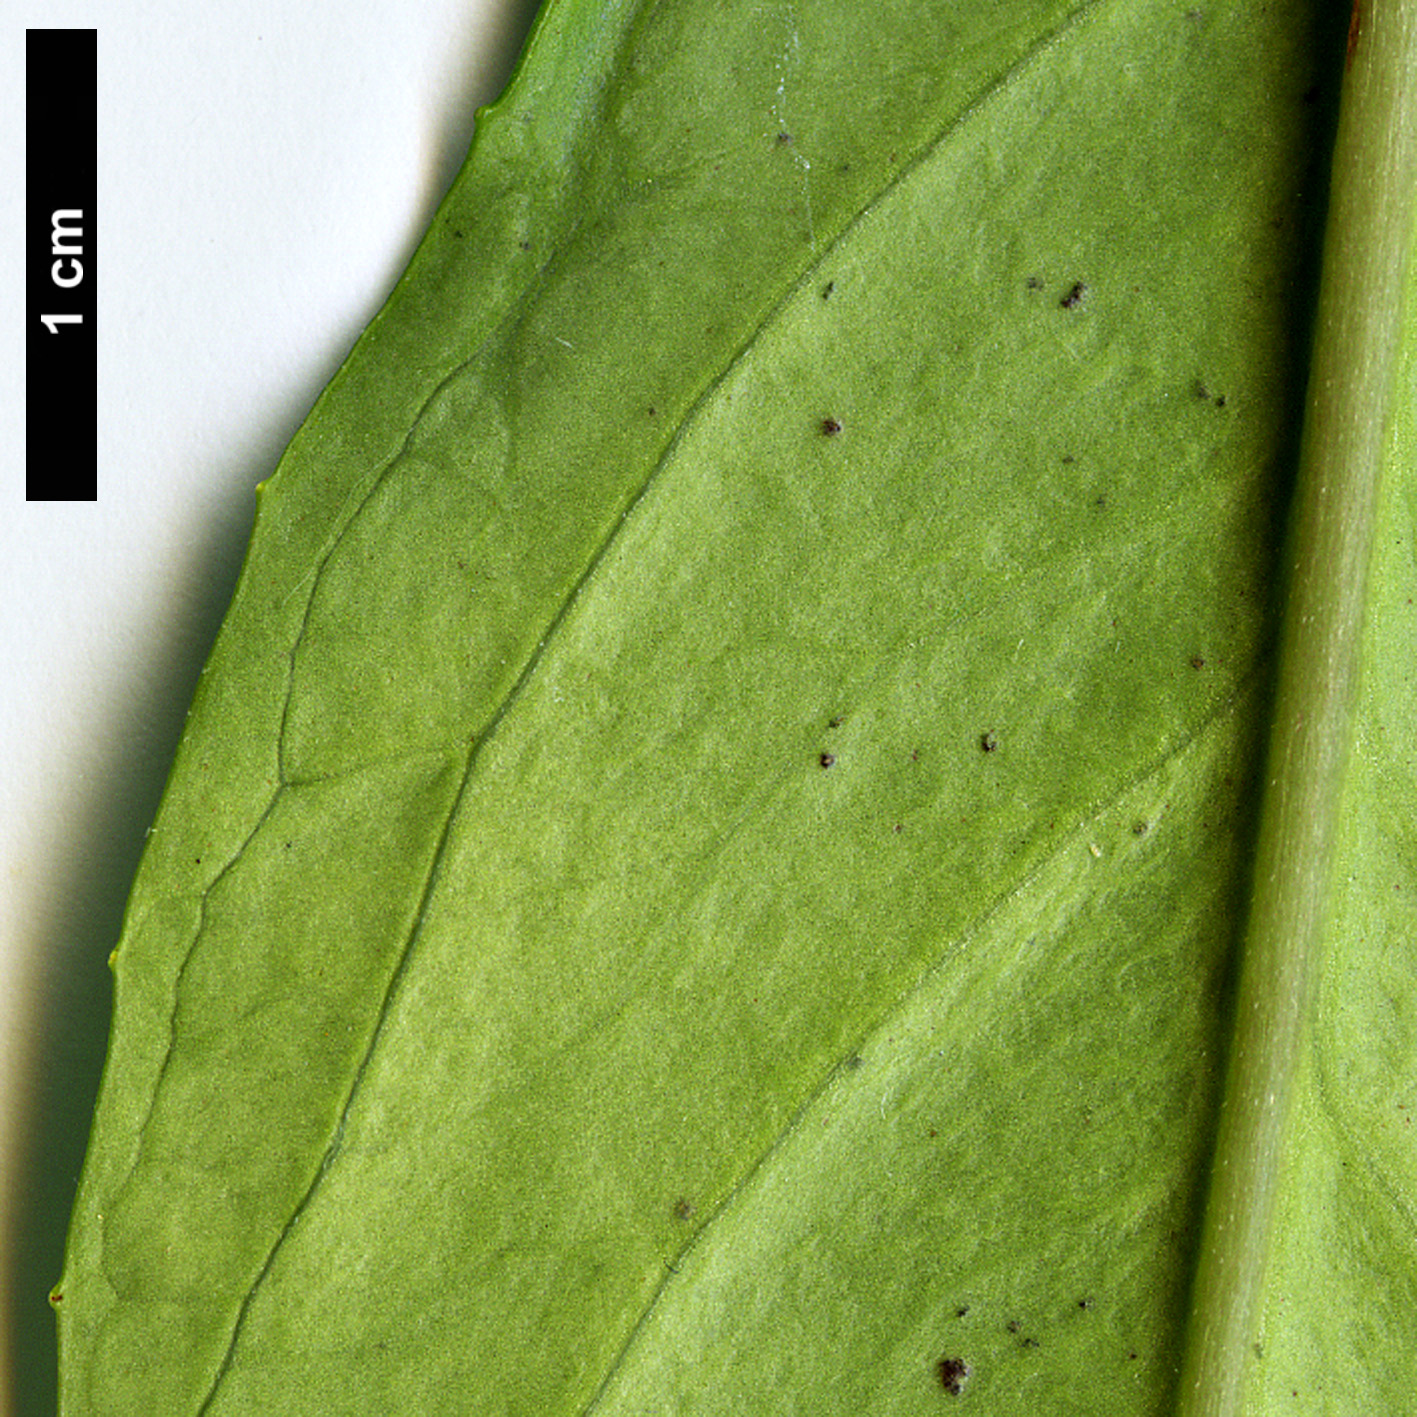 High resolution image: Family: Hydrangeaceae - Genus: Hydrangea - Taxon: lobbii